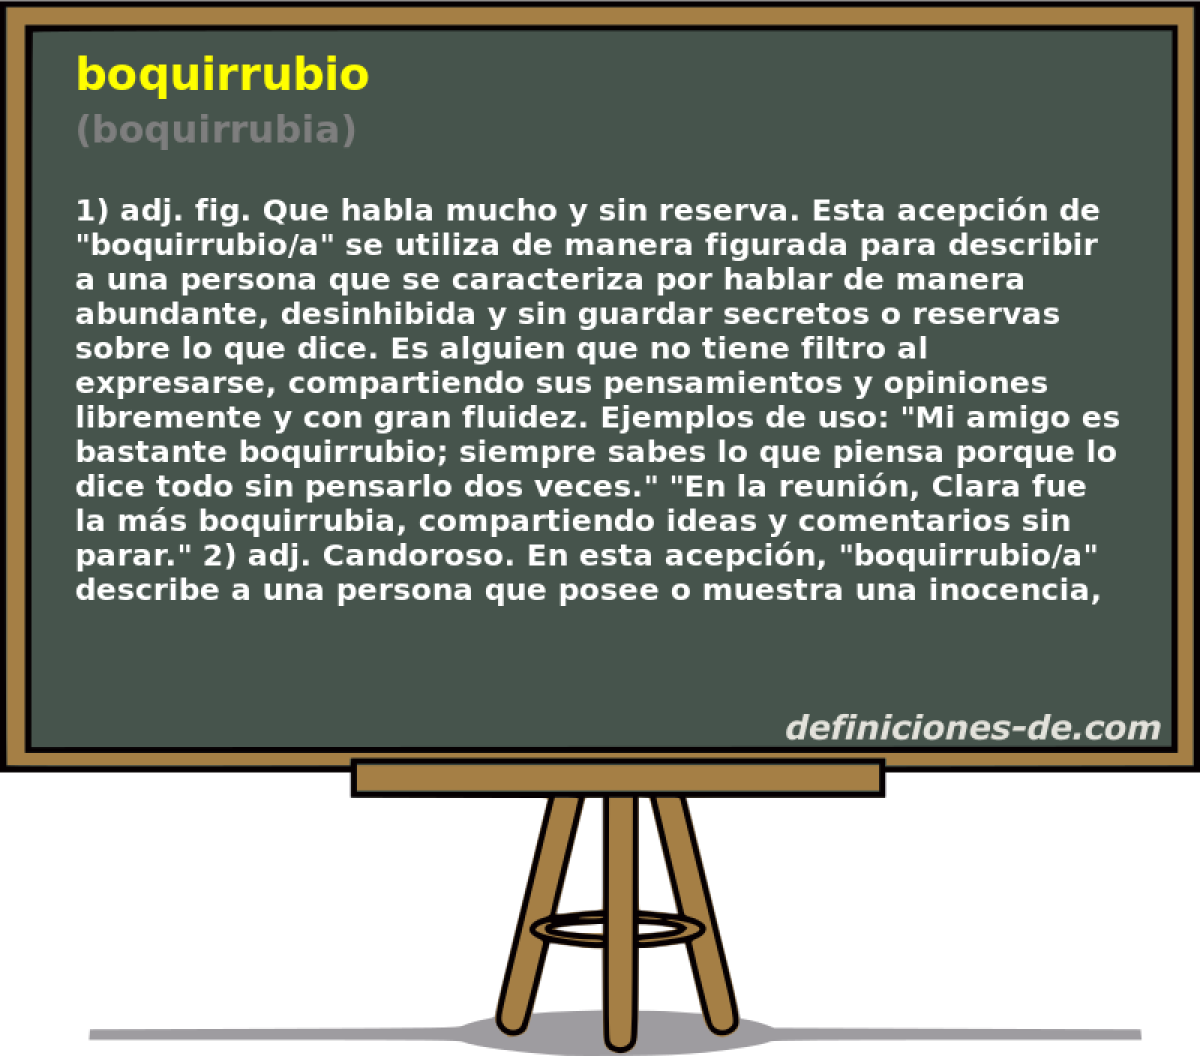 boquirrubio (boquirrubia)